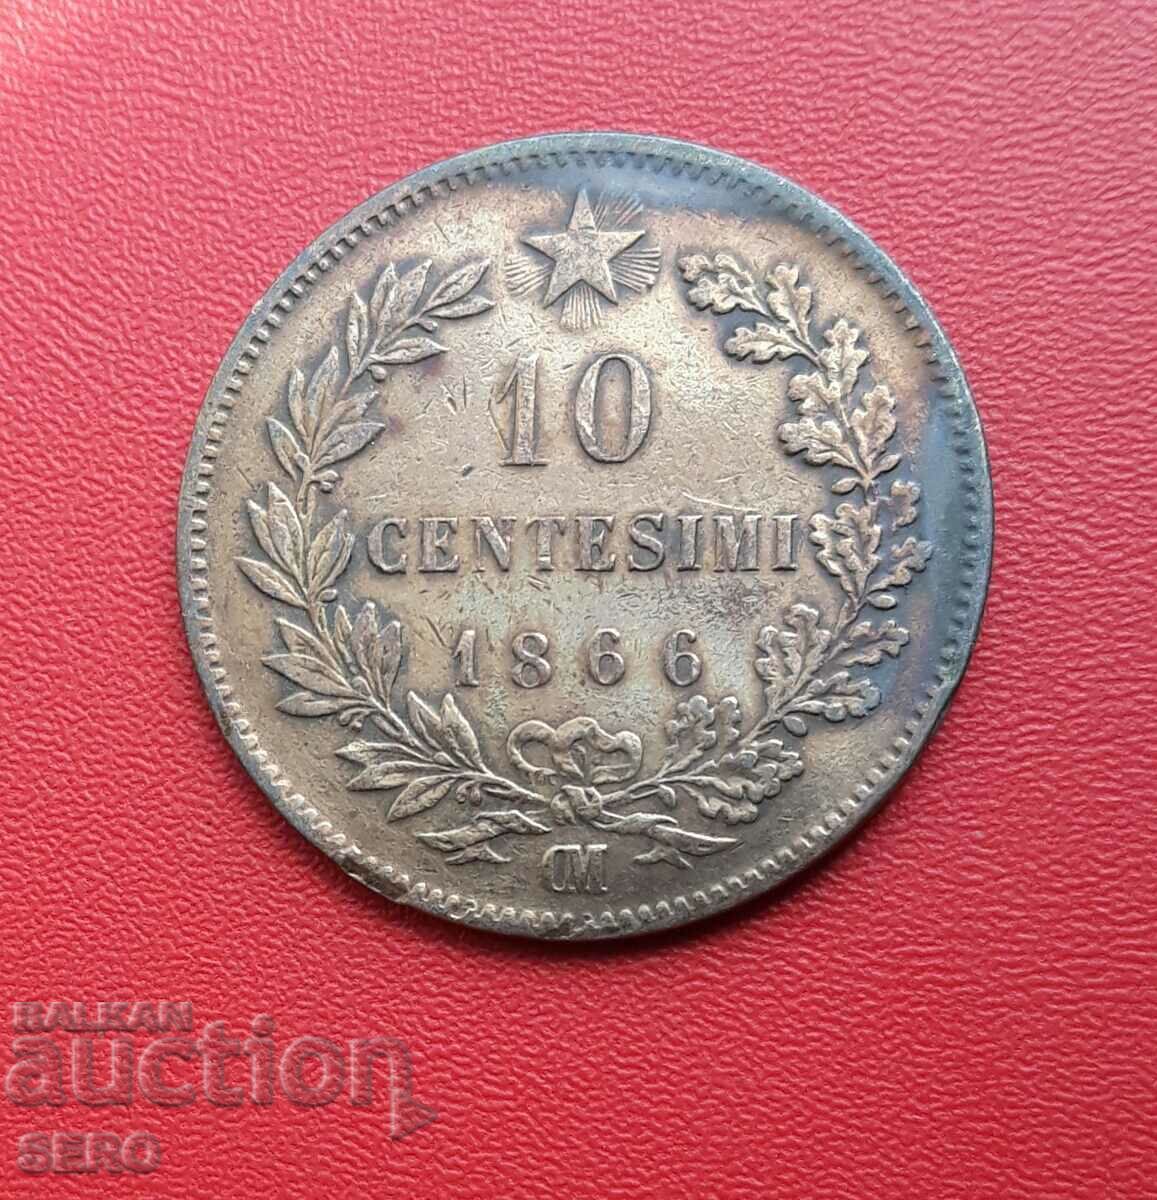 Italy-10 cents 1866